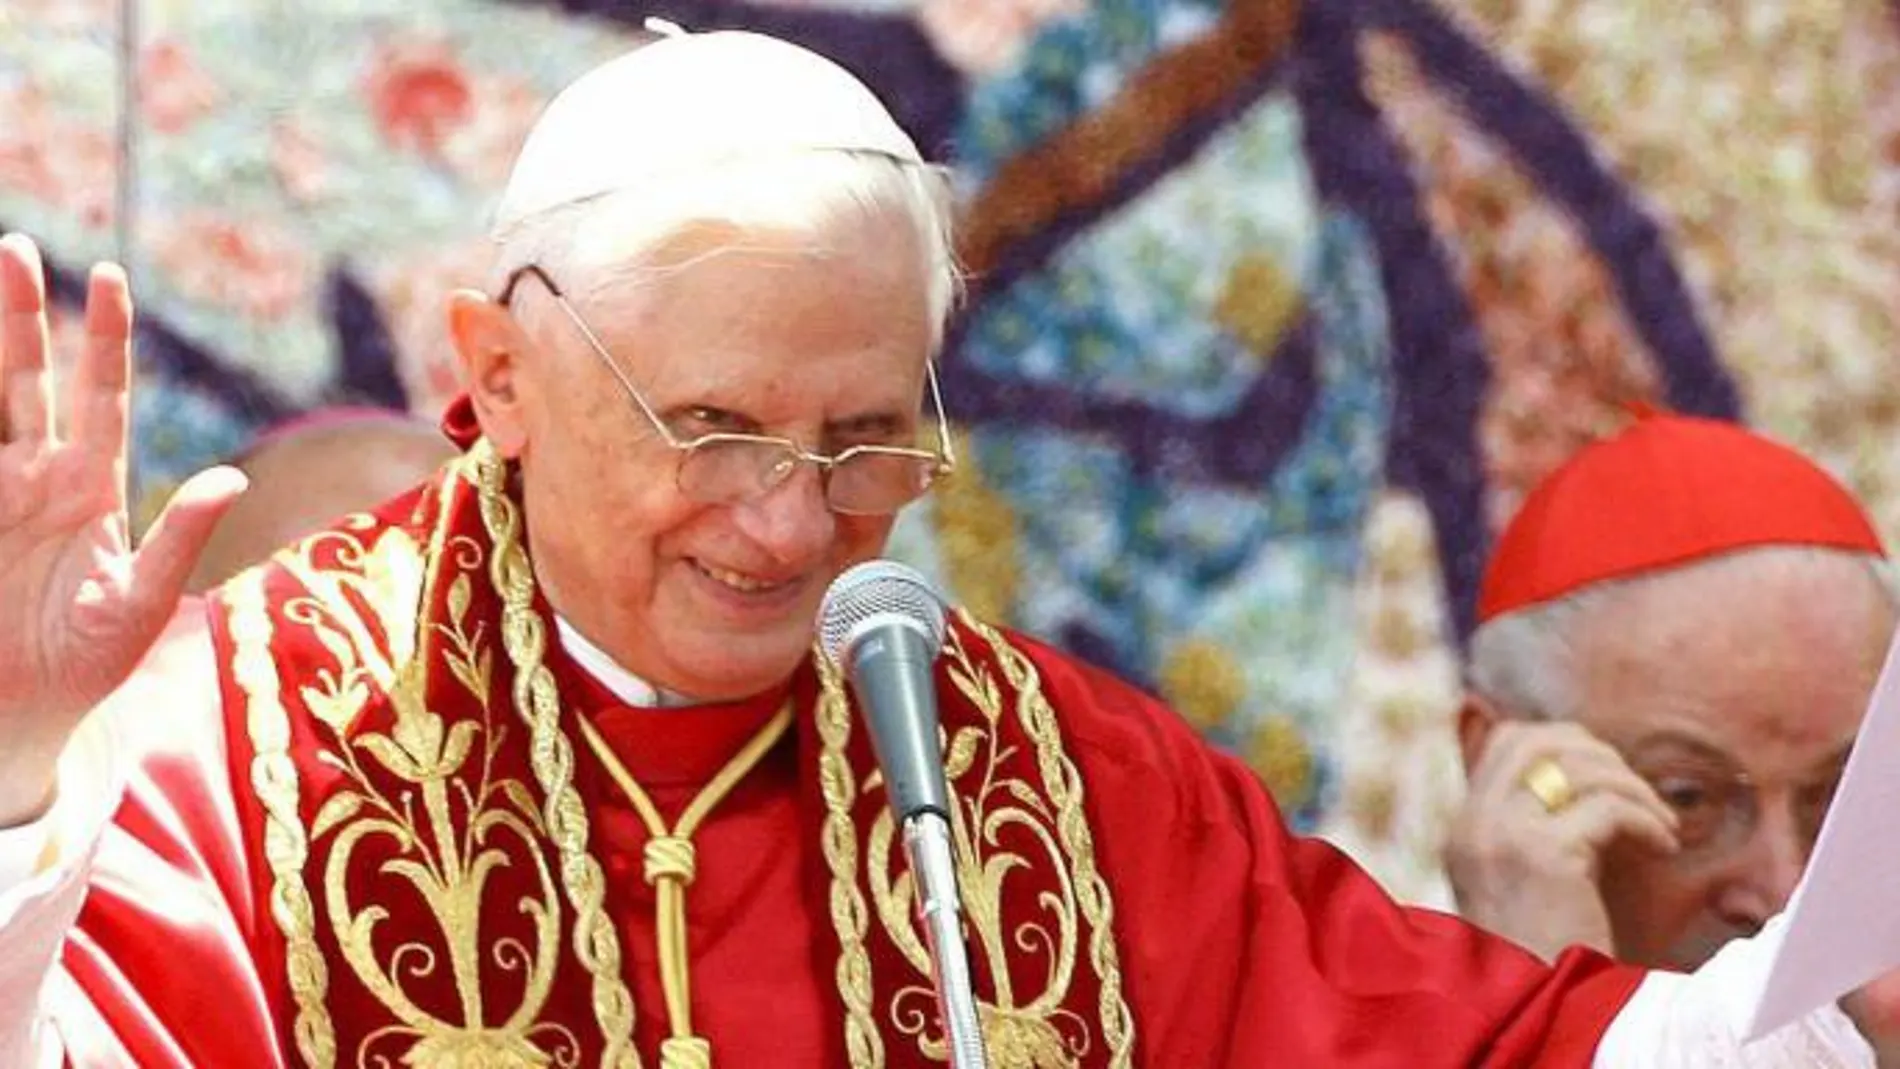 Su Santidad el Papa Benedicto XVI visitó Valencia los días 8 y 9 de julio de 2006